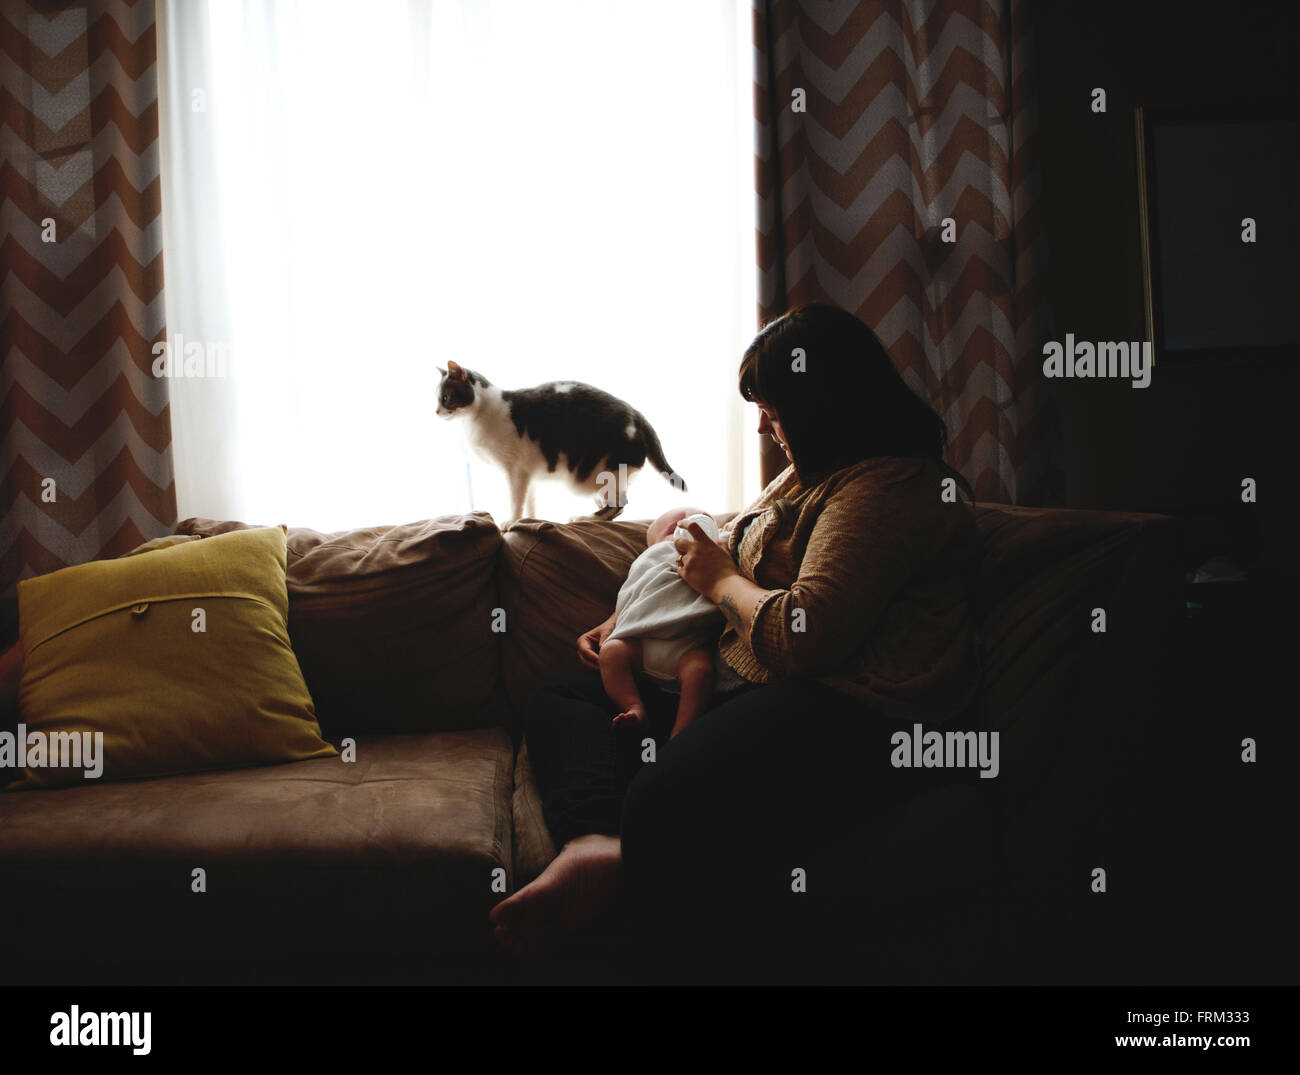 Mutter füttert Baby junge auf der Couch an einem Fenster. Haustier Katze ist auf der Rückseite der Couch. Stockfoto